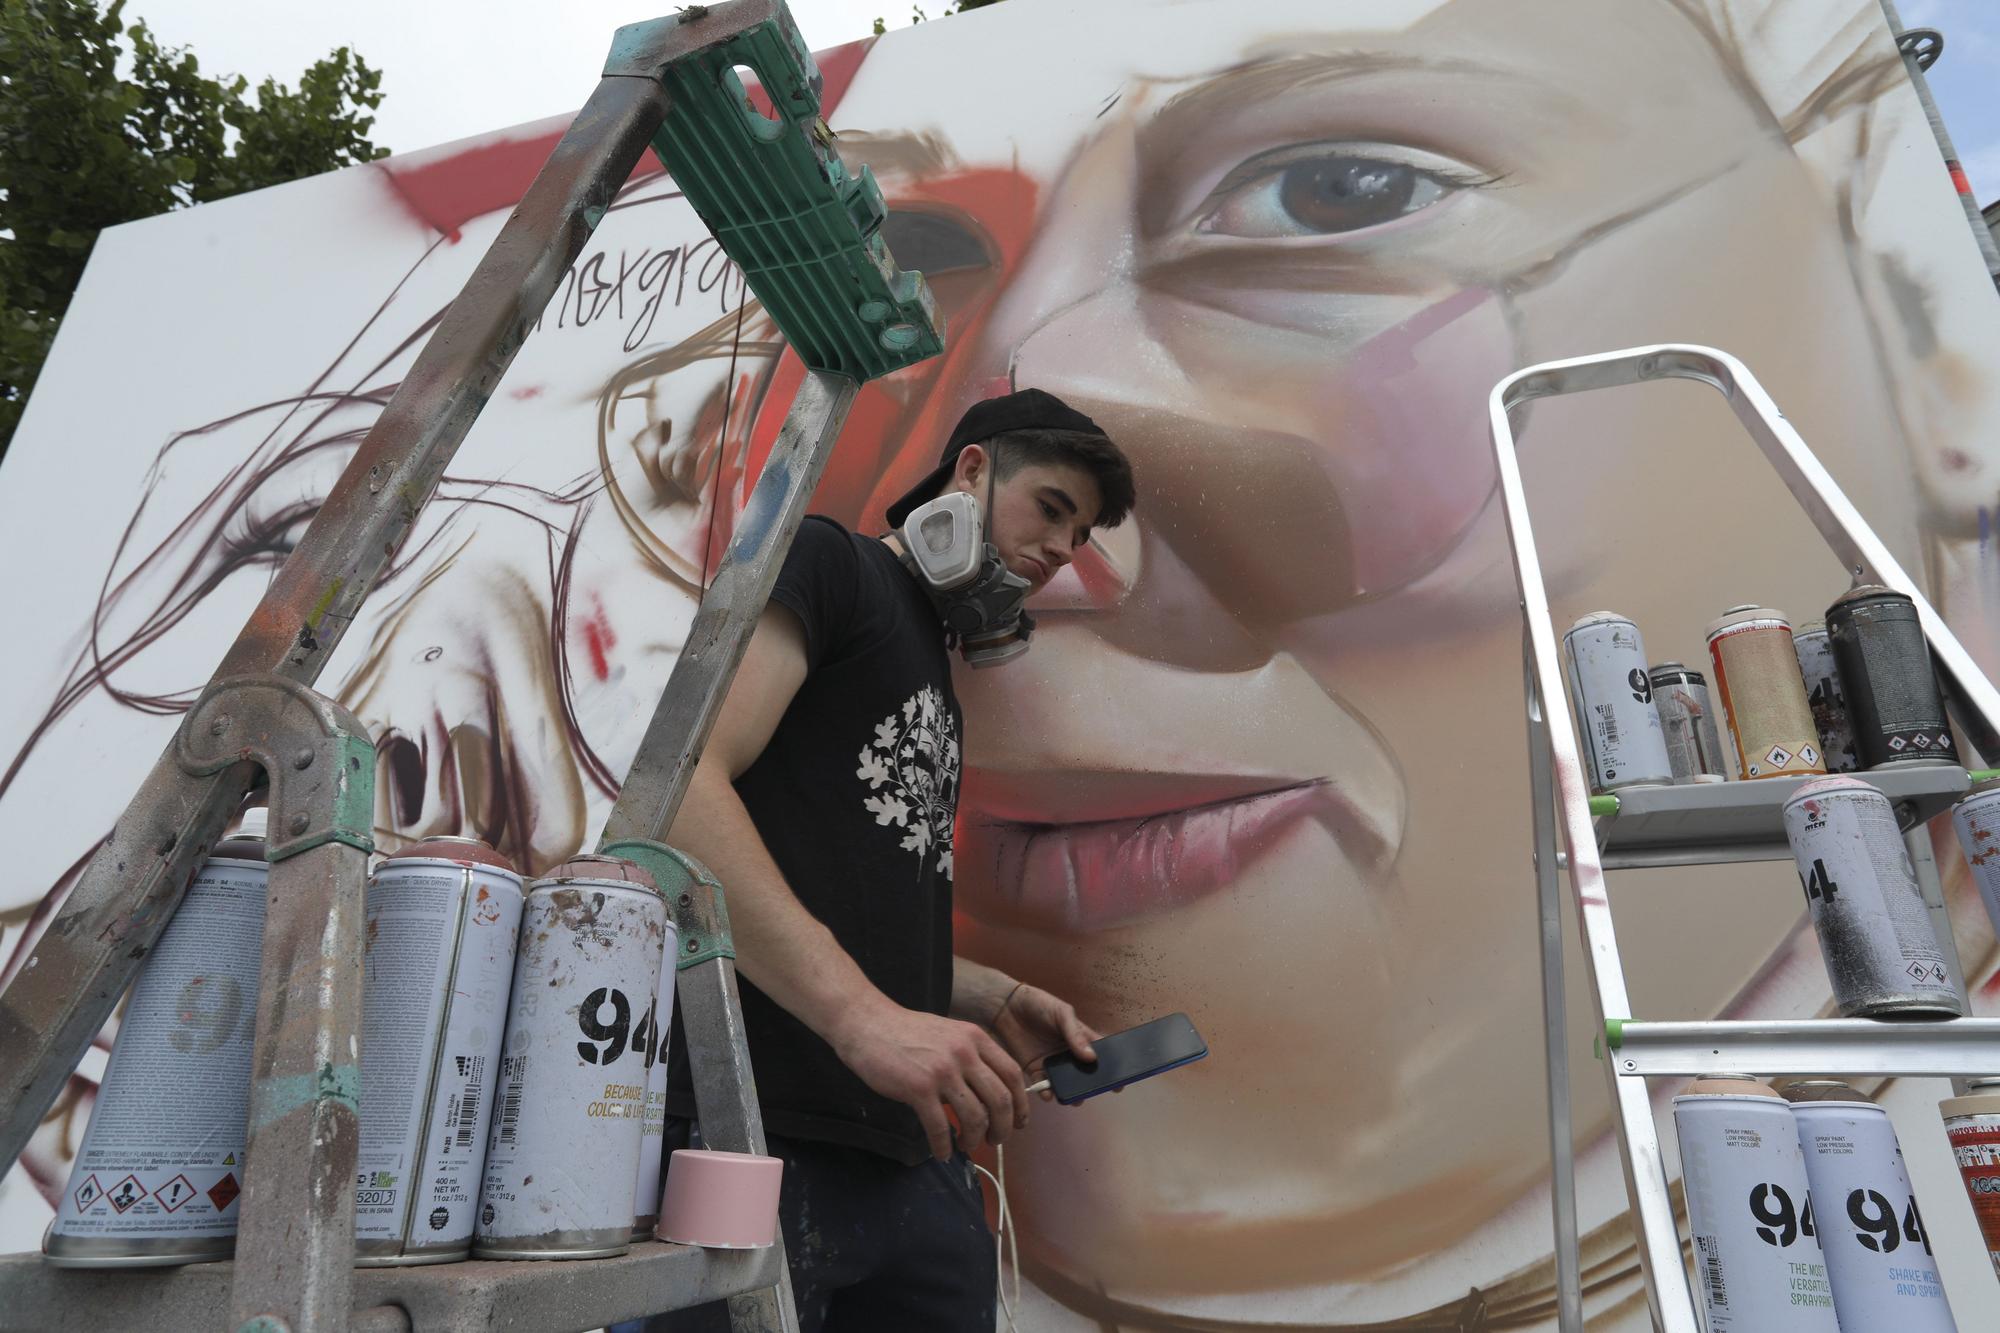 El arte mural toma las calles de Avilés